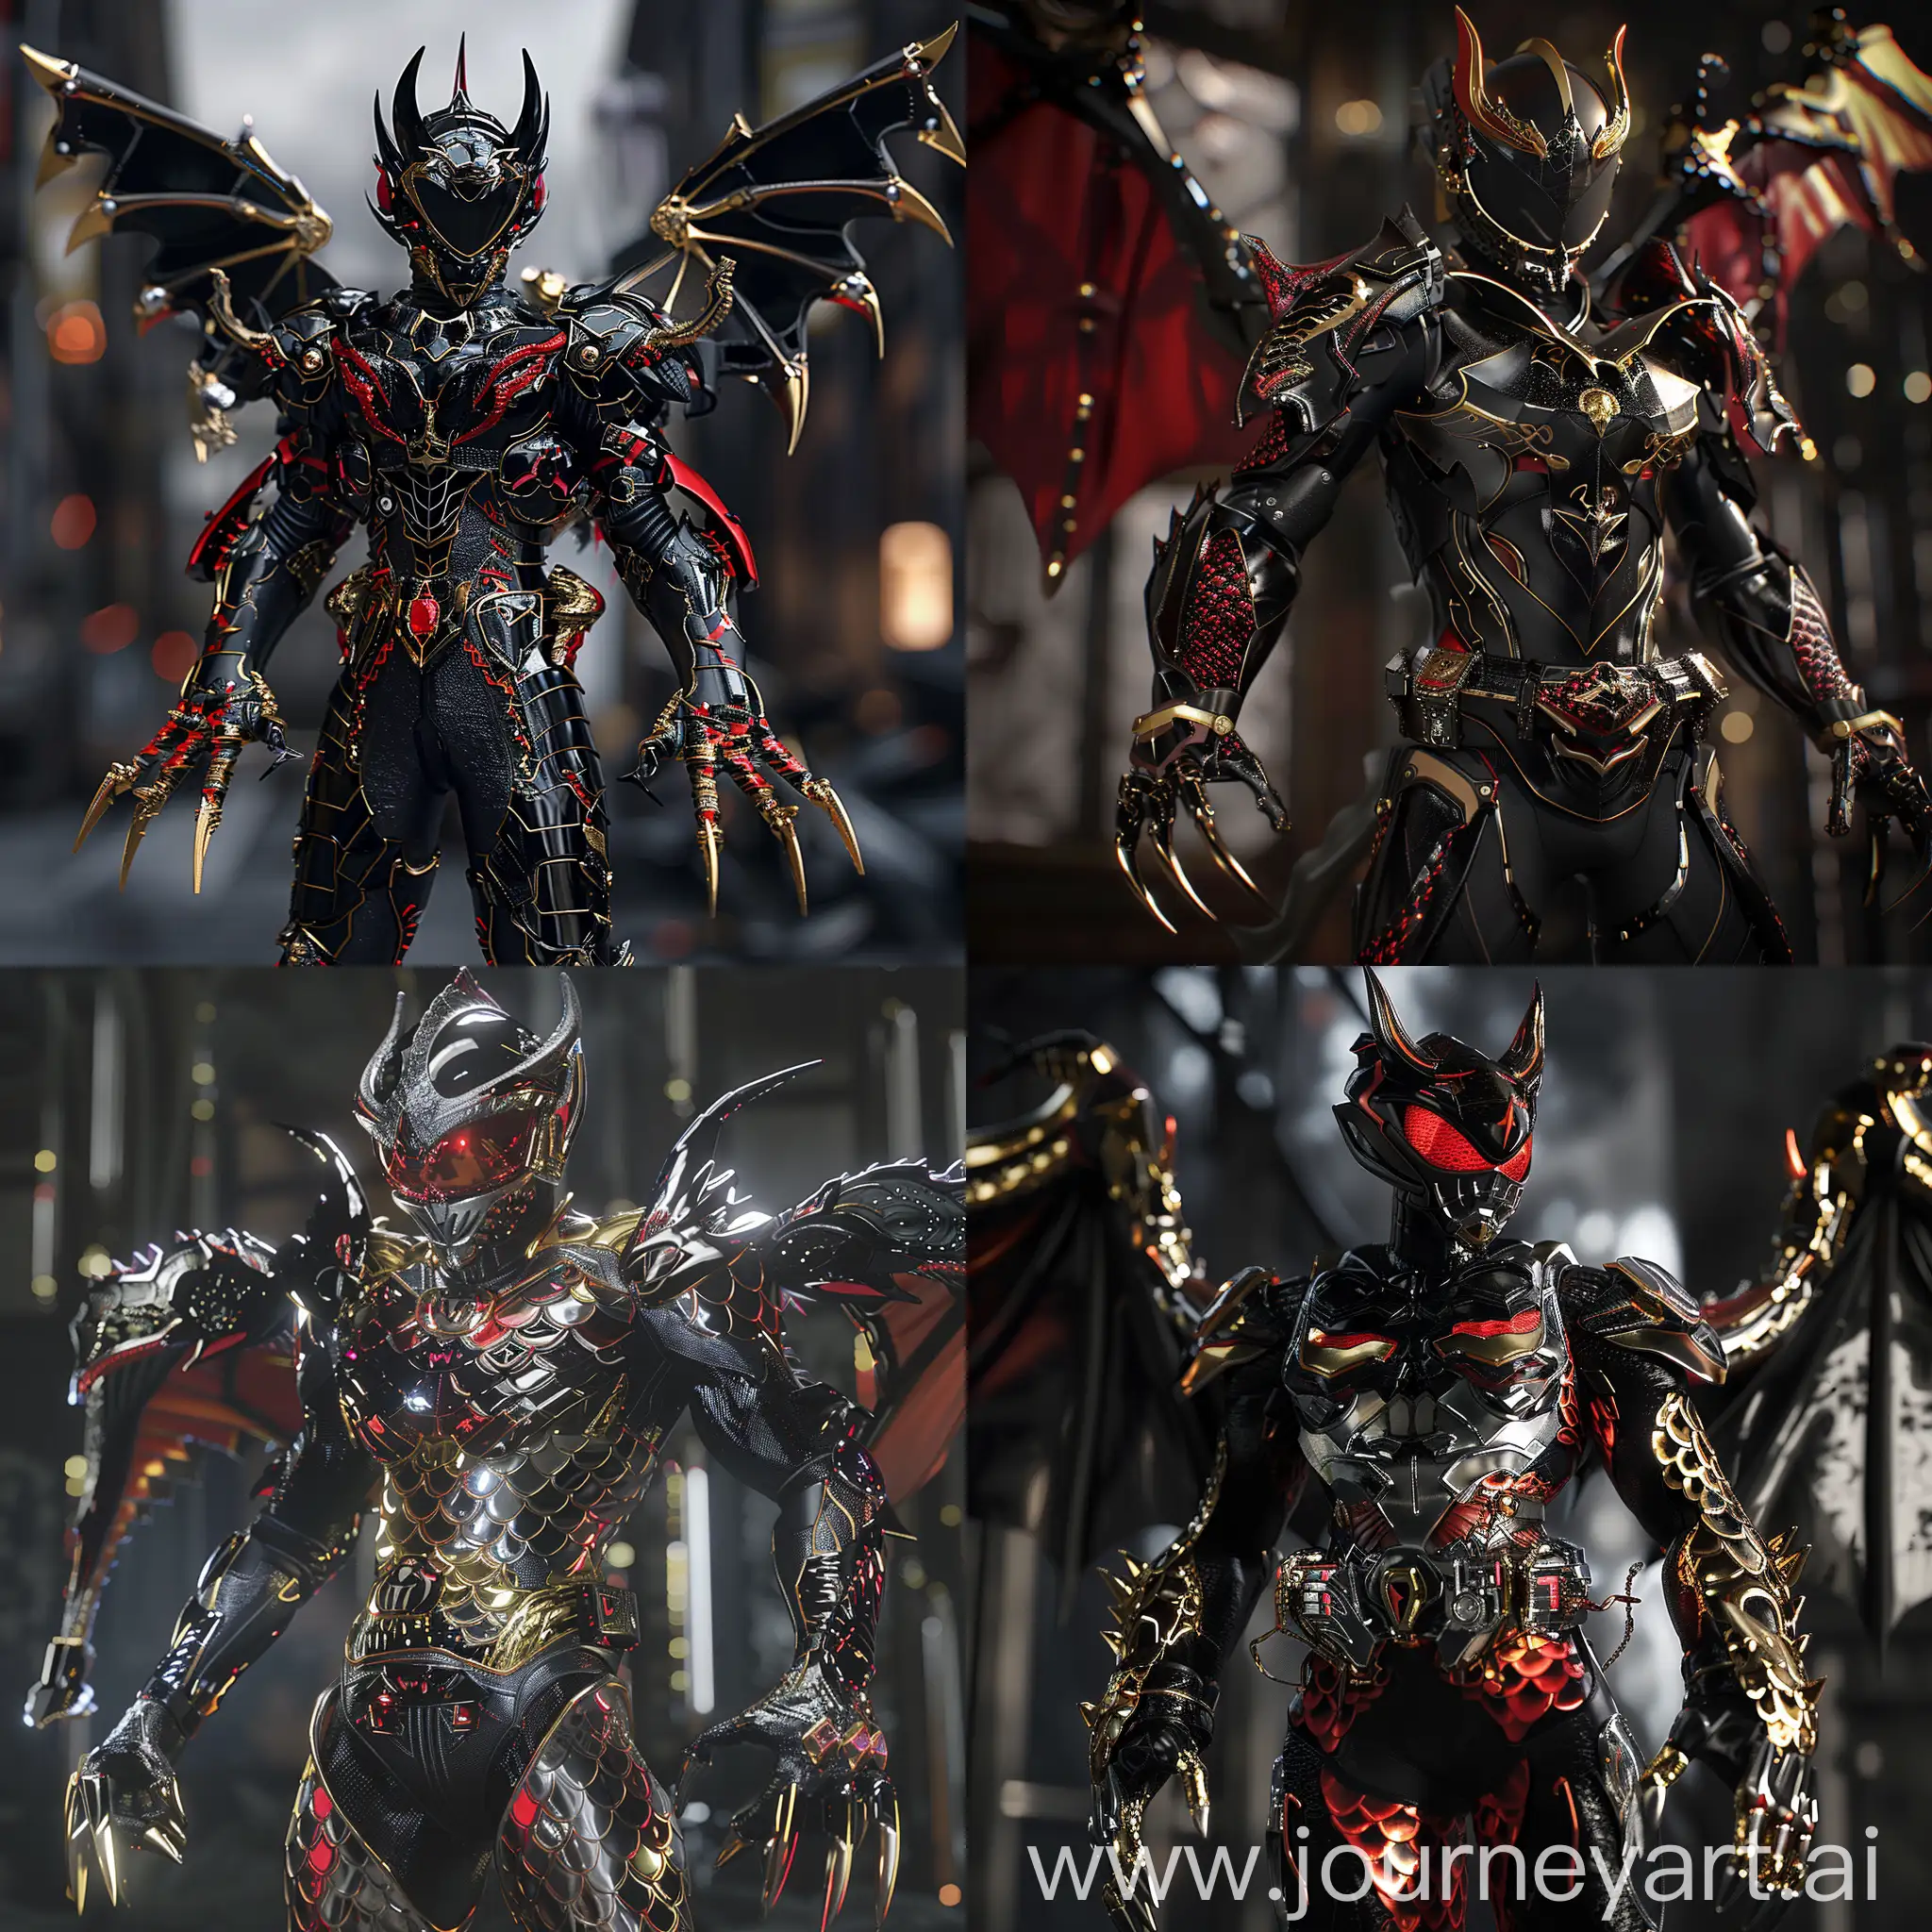 Sinister-VenomDevil-Kamen-Rider-Suit-with-DragonInspired-Design